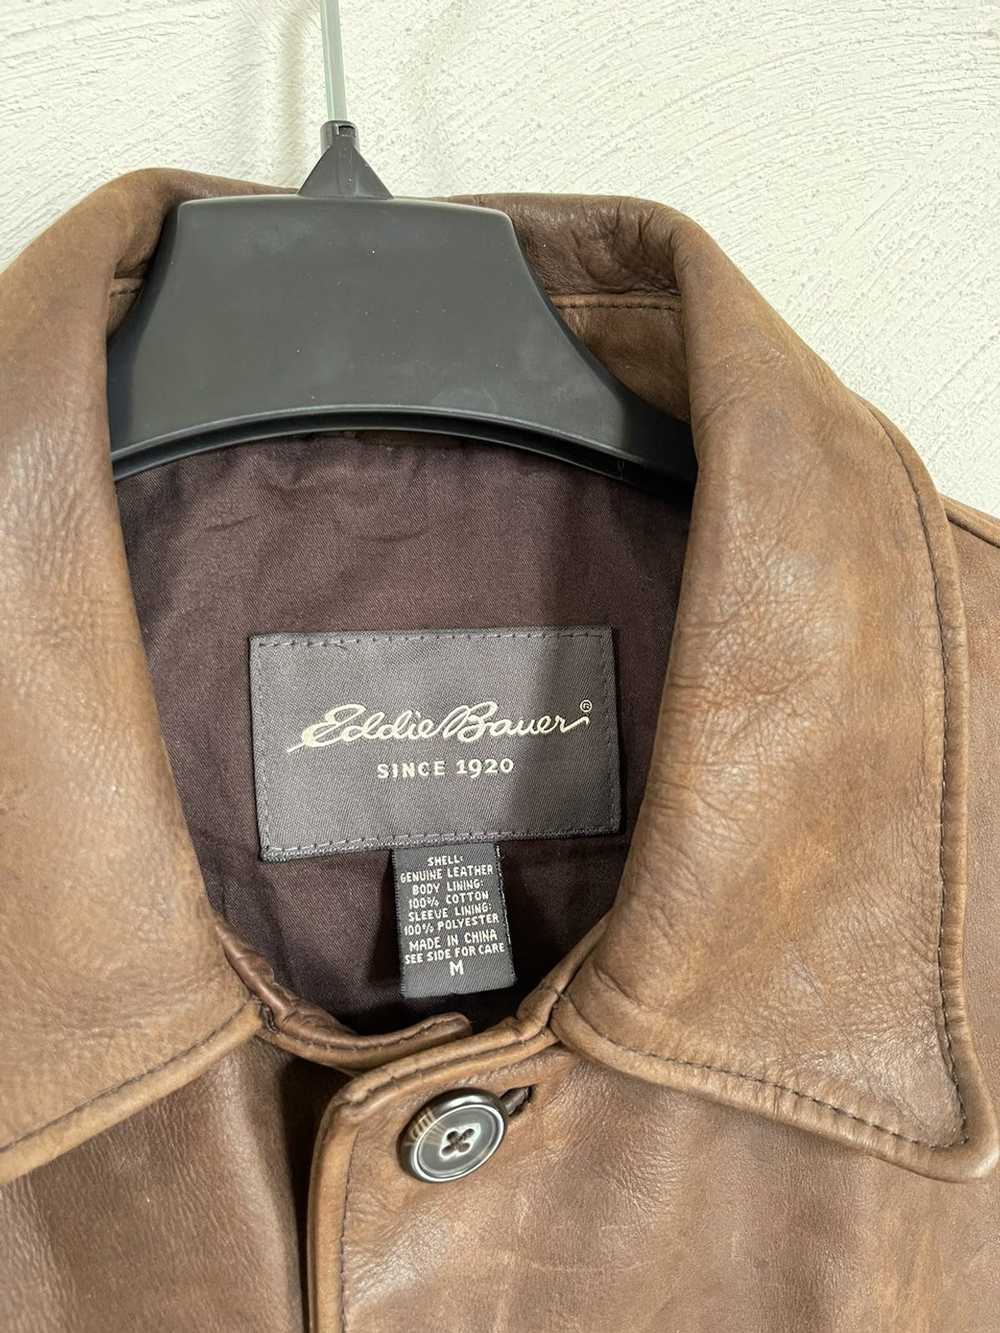 Eddie Bauer Eddie Bauer Leather Parka Jacket - image 3